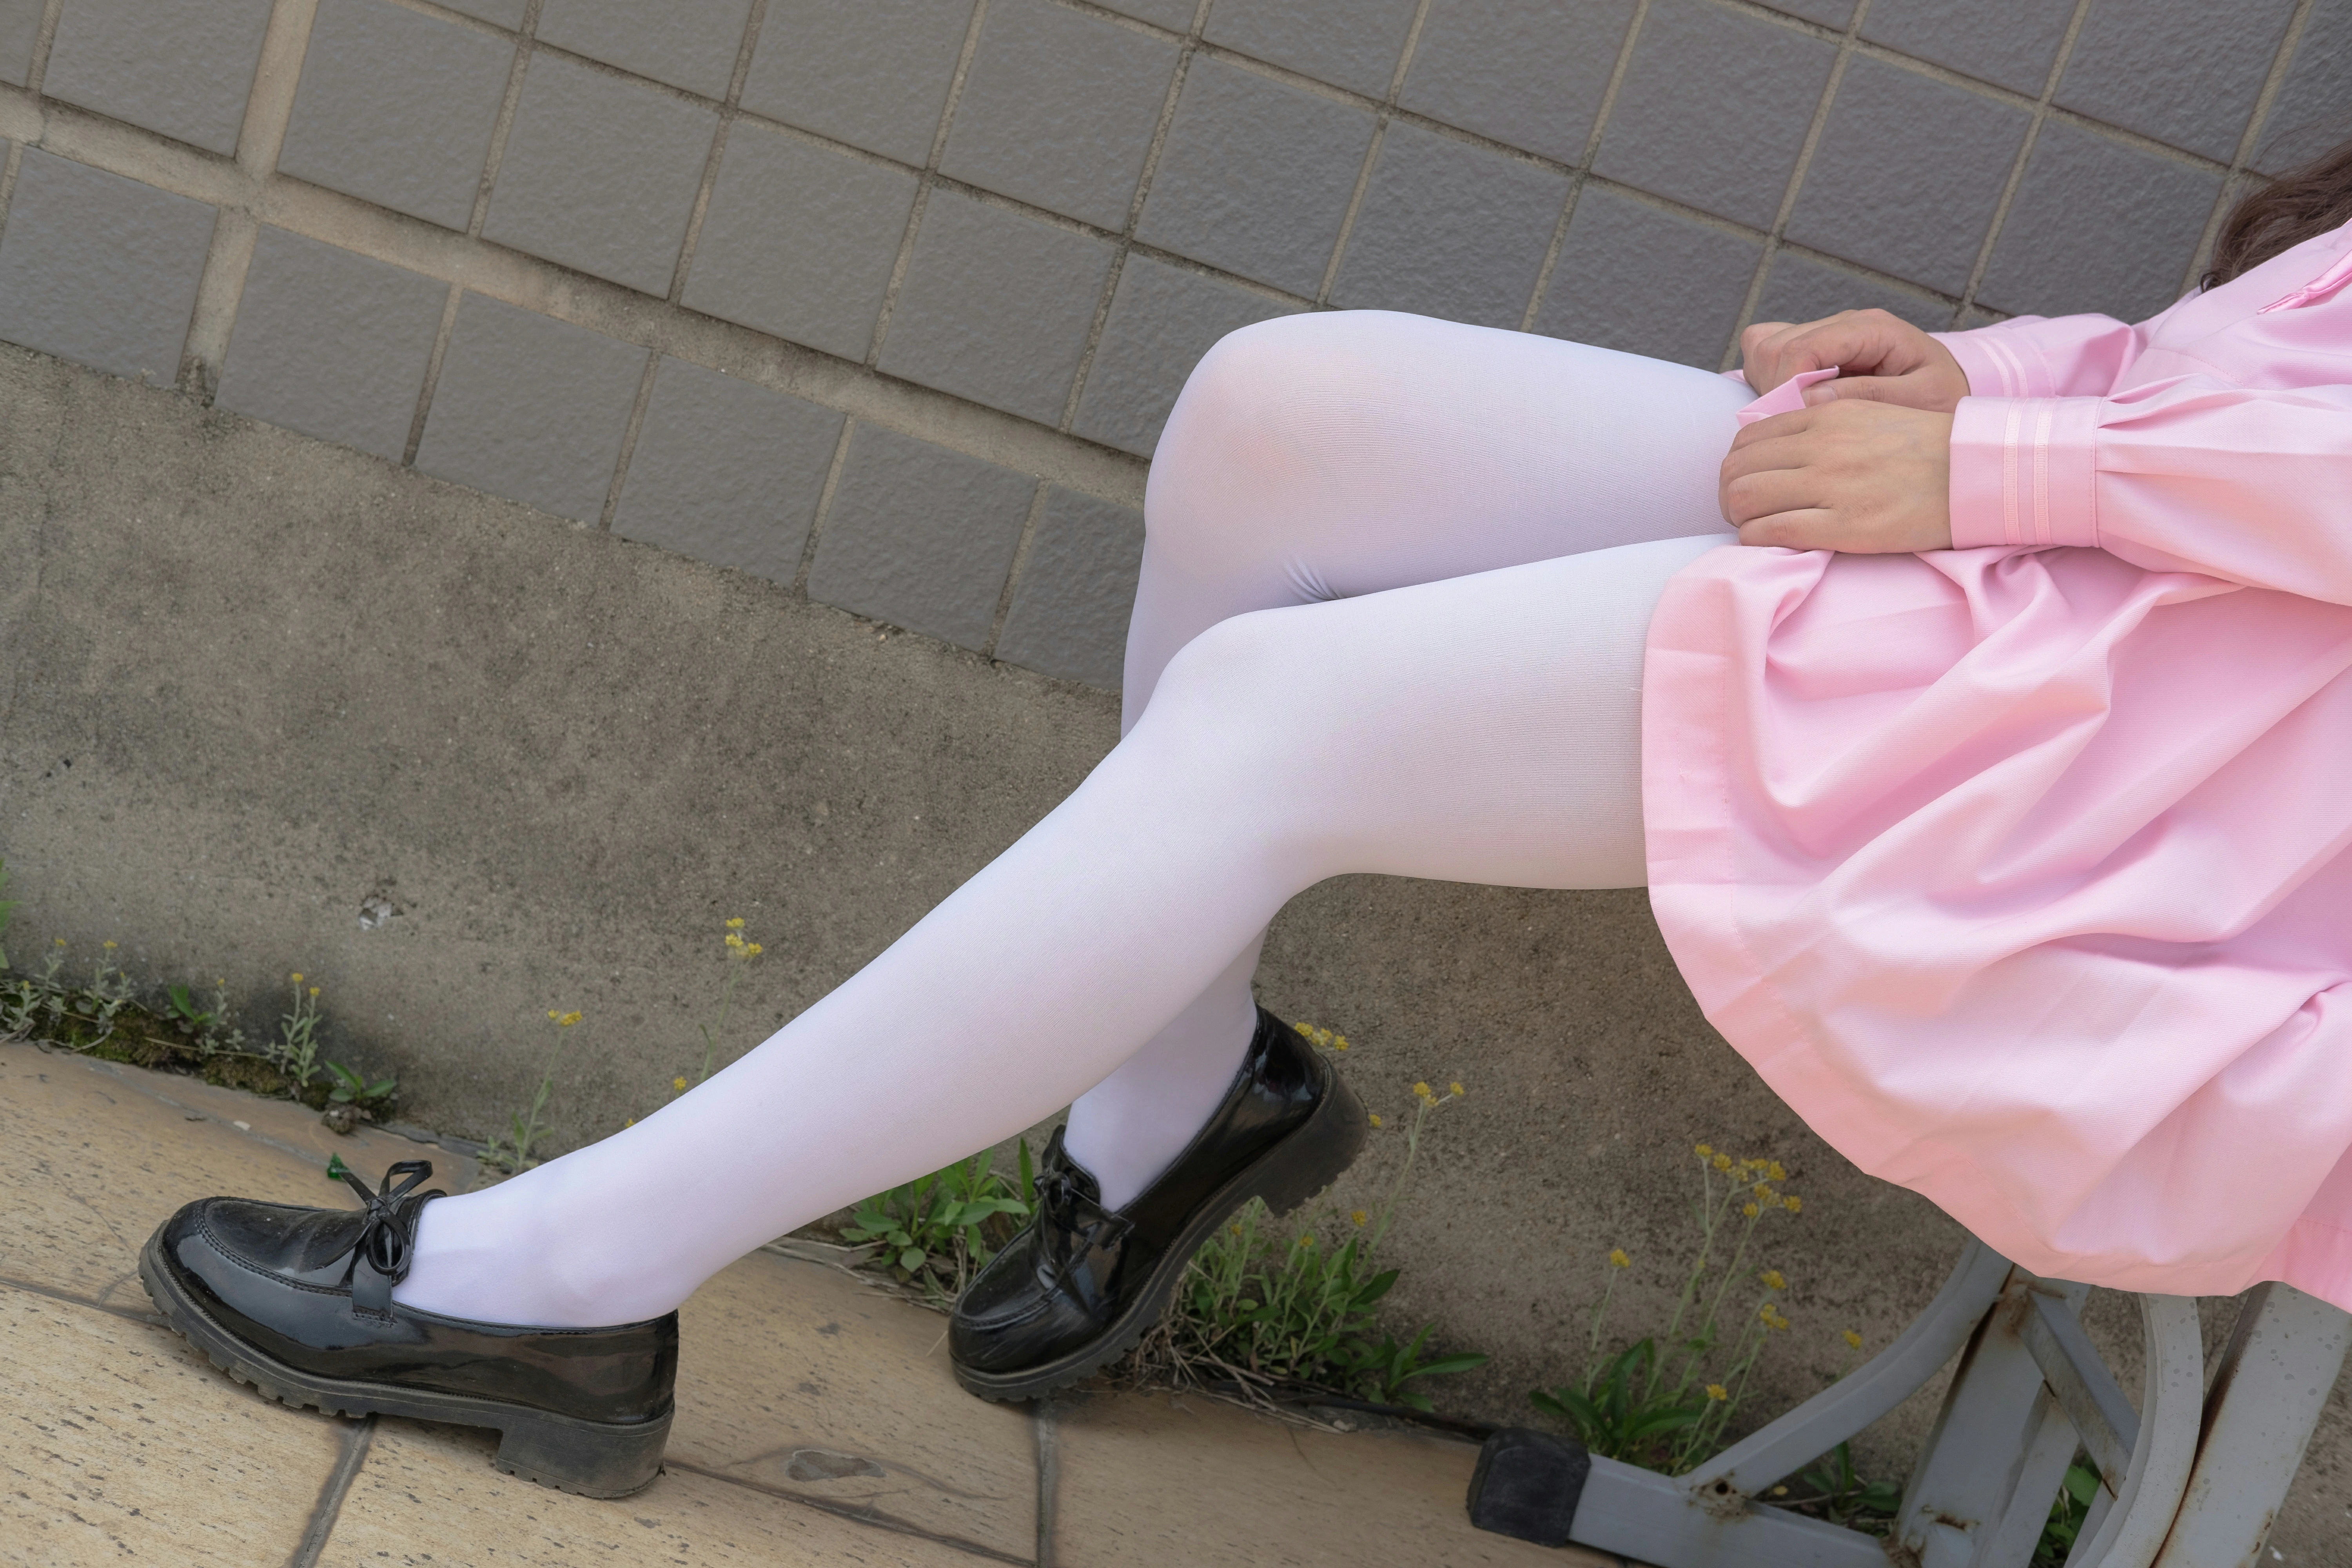 [森萝财团]X-026 清纯萝莉 粉色JK校服与短裙加白色丝袜美腿性感私房写真集,